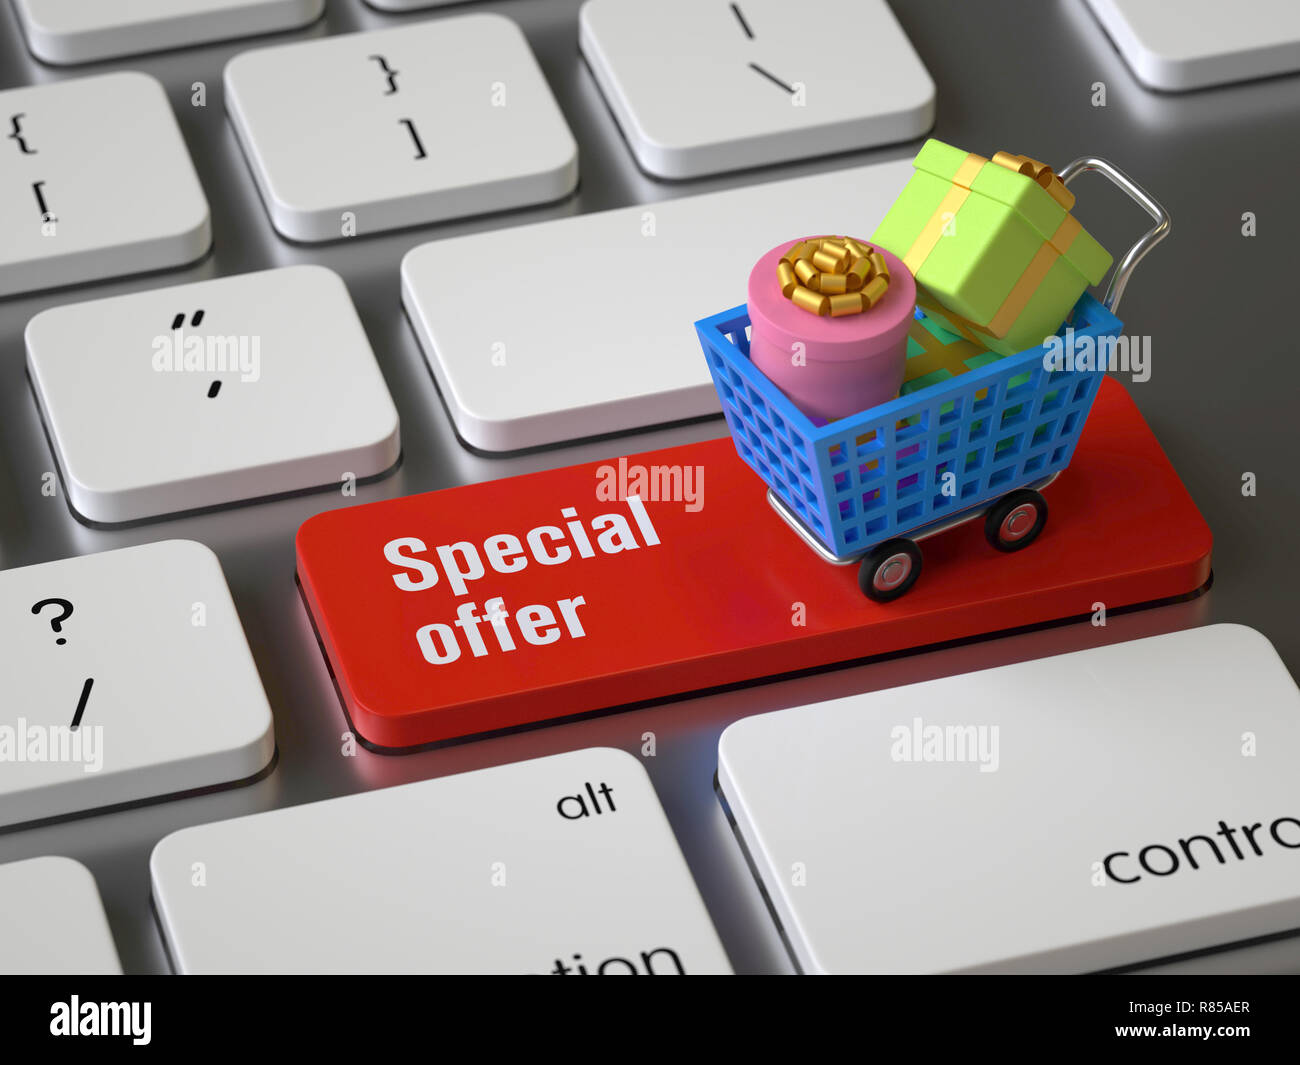 Offerte speciali sulla tastiera, rendering 3d,immagine concettuale. Foto Stock